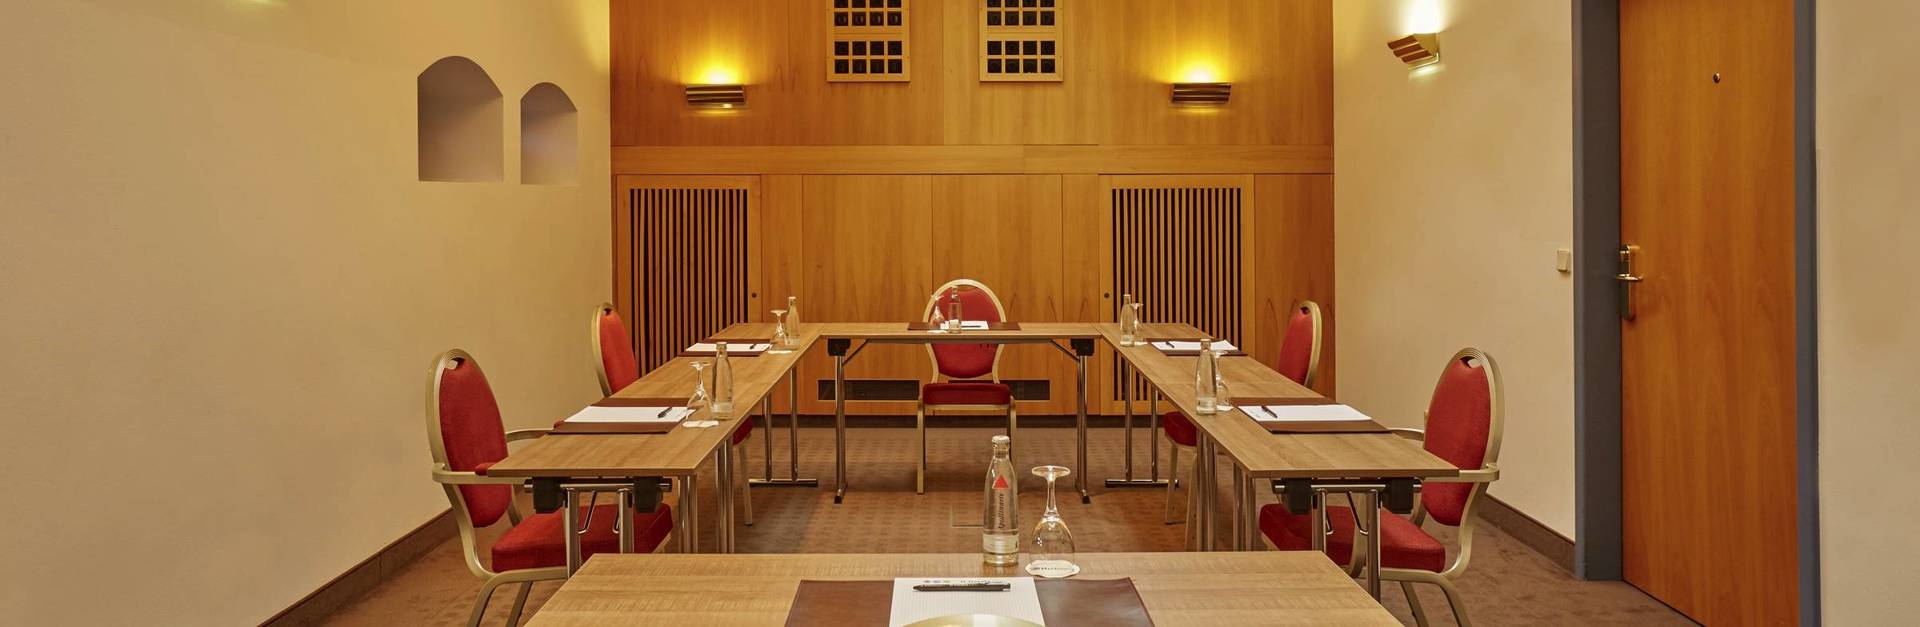 Unsere individuellen Tagungsangebote - H4 Hotel Residenzschloss Bayreuth - Offizielle Webseite